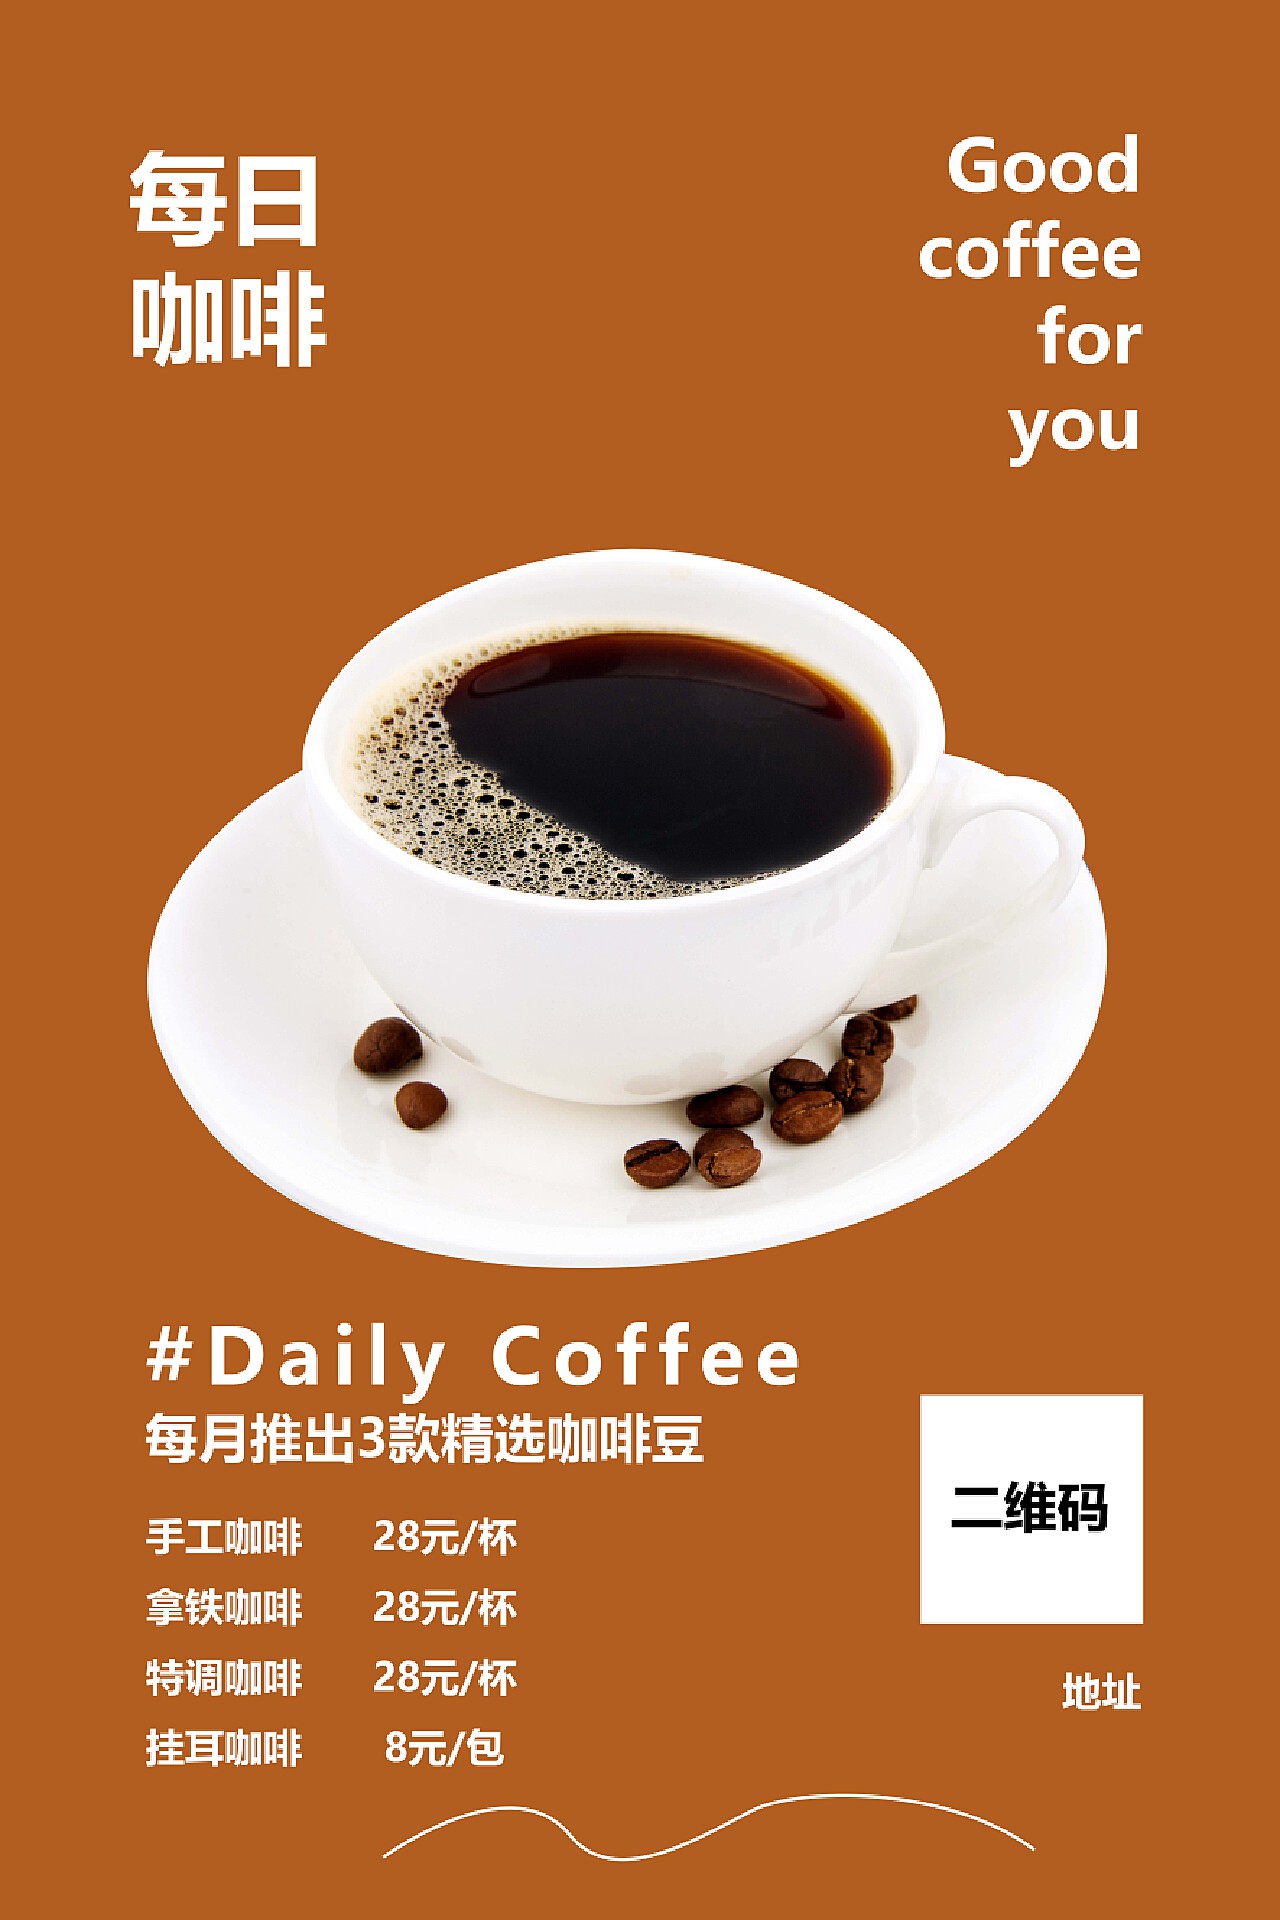 每天上午10:30喝咖啡最佳时间 - China.org.cn